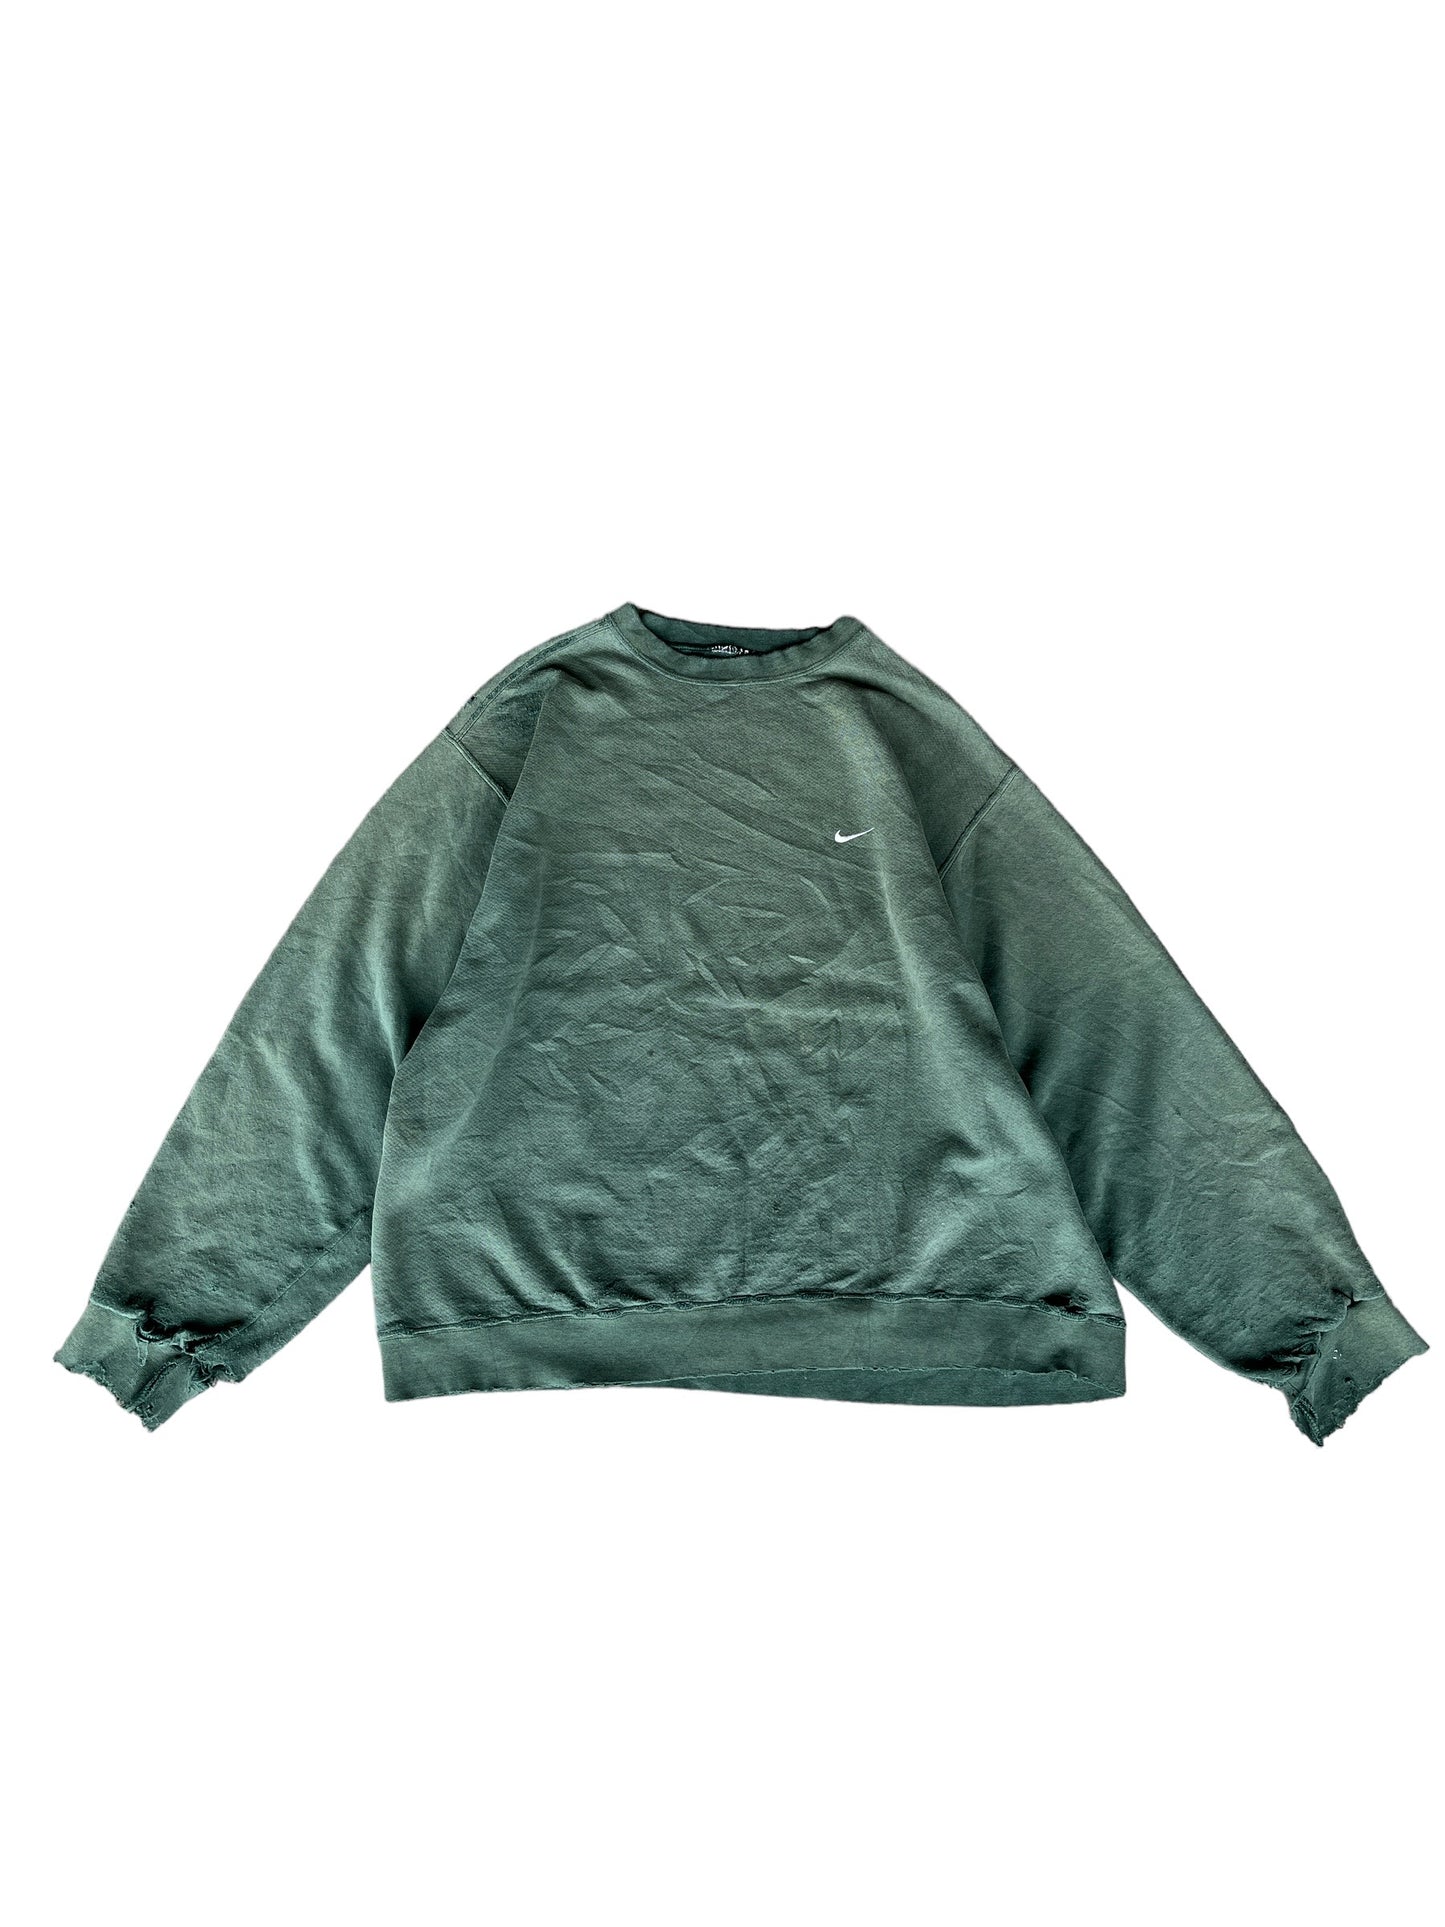 Vintage Nike Sweatshirt Green